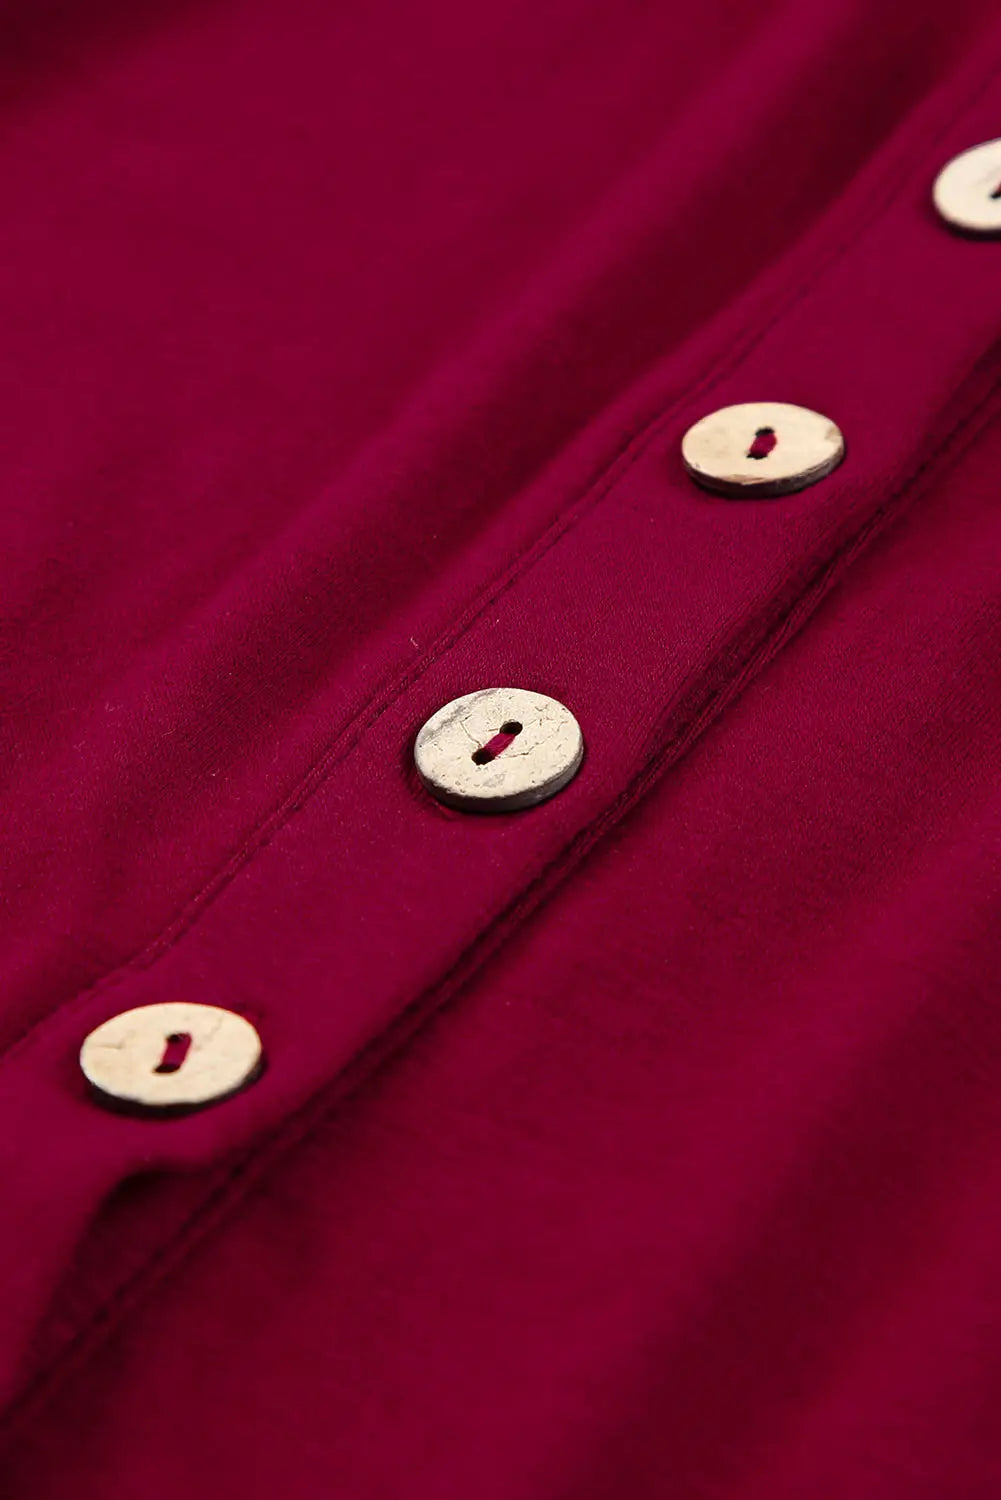 Red button up high waist long sleeve dress - midi dresses